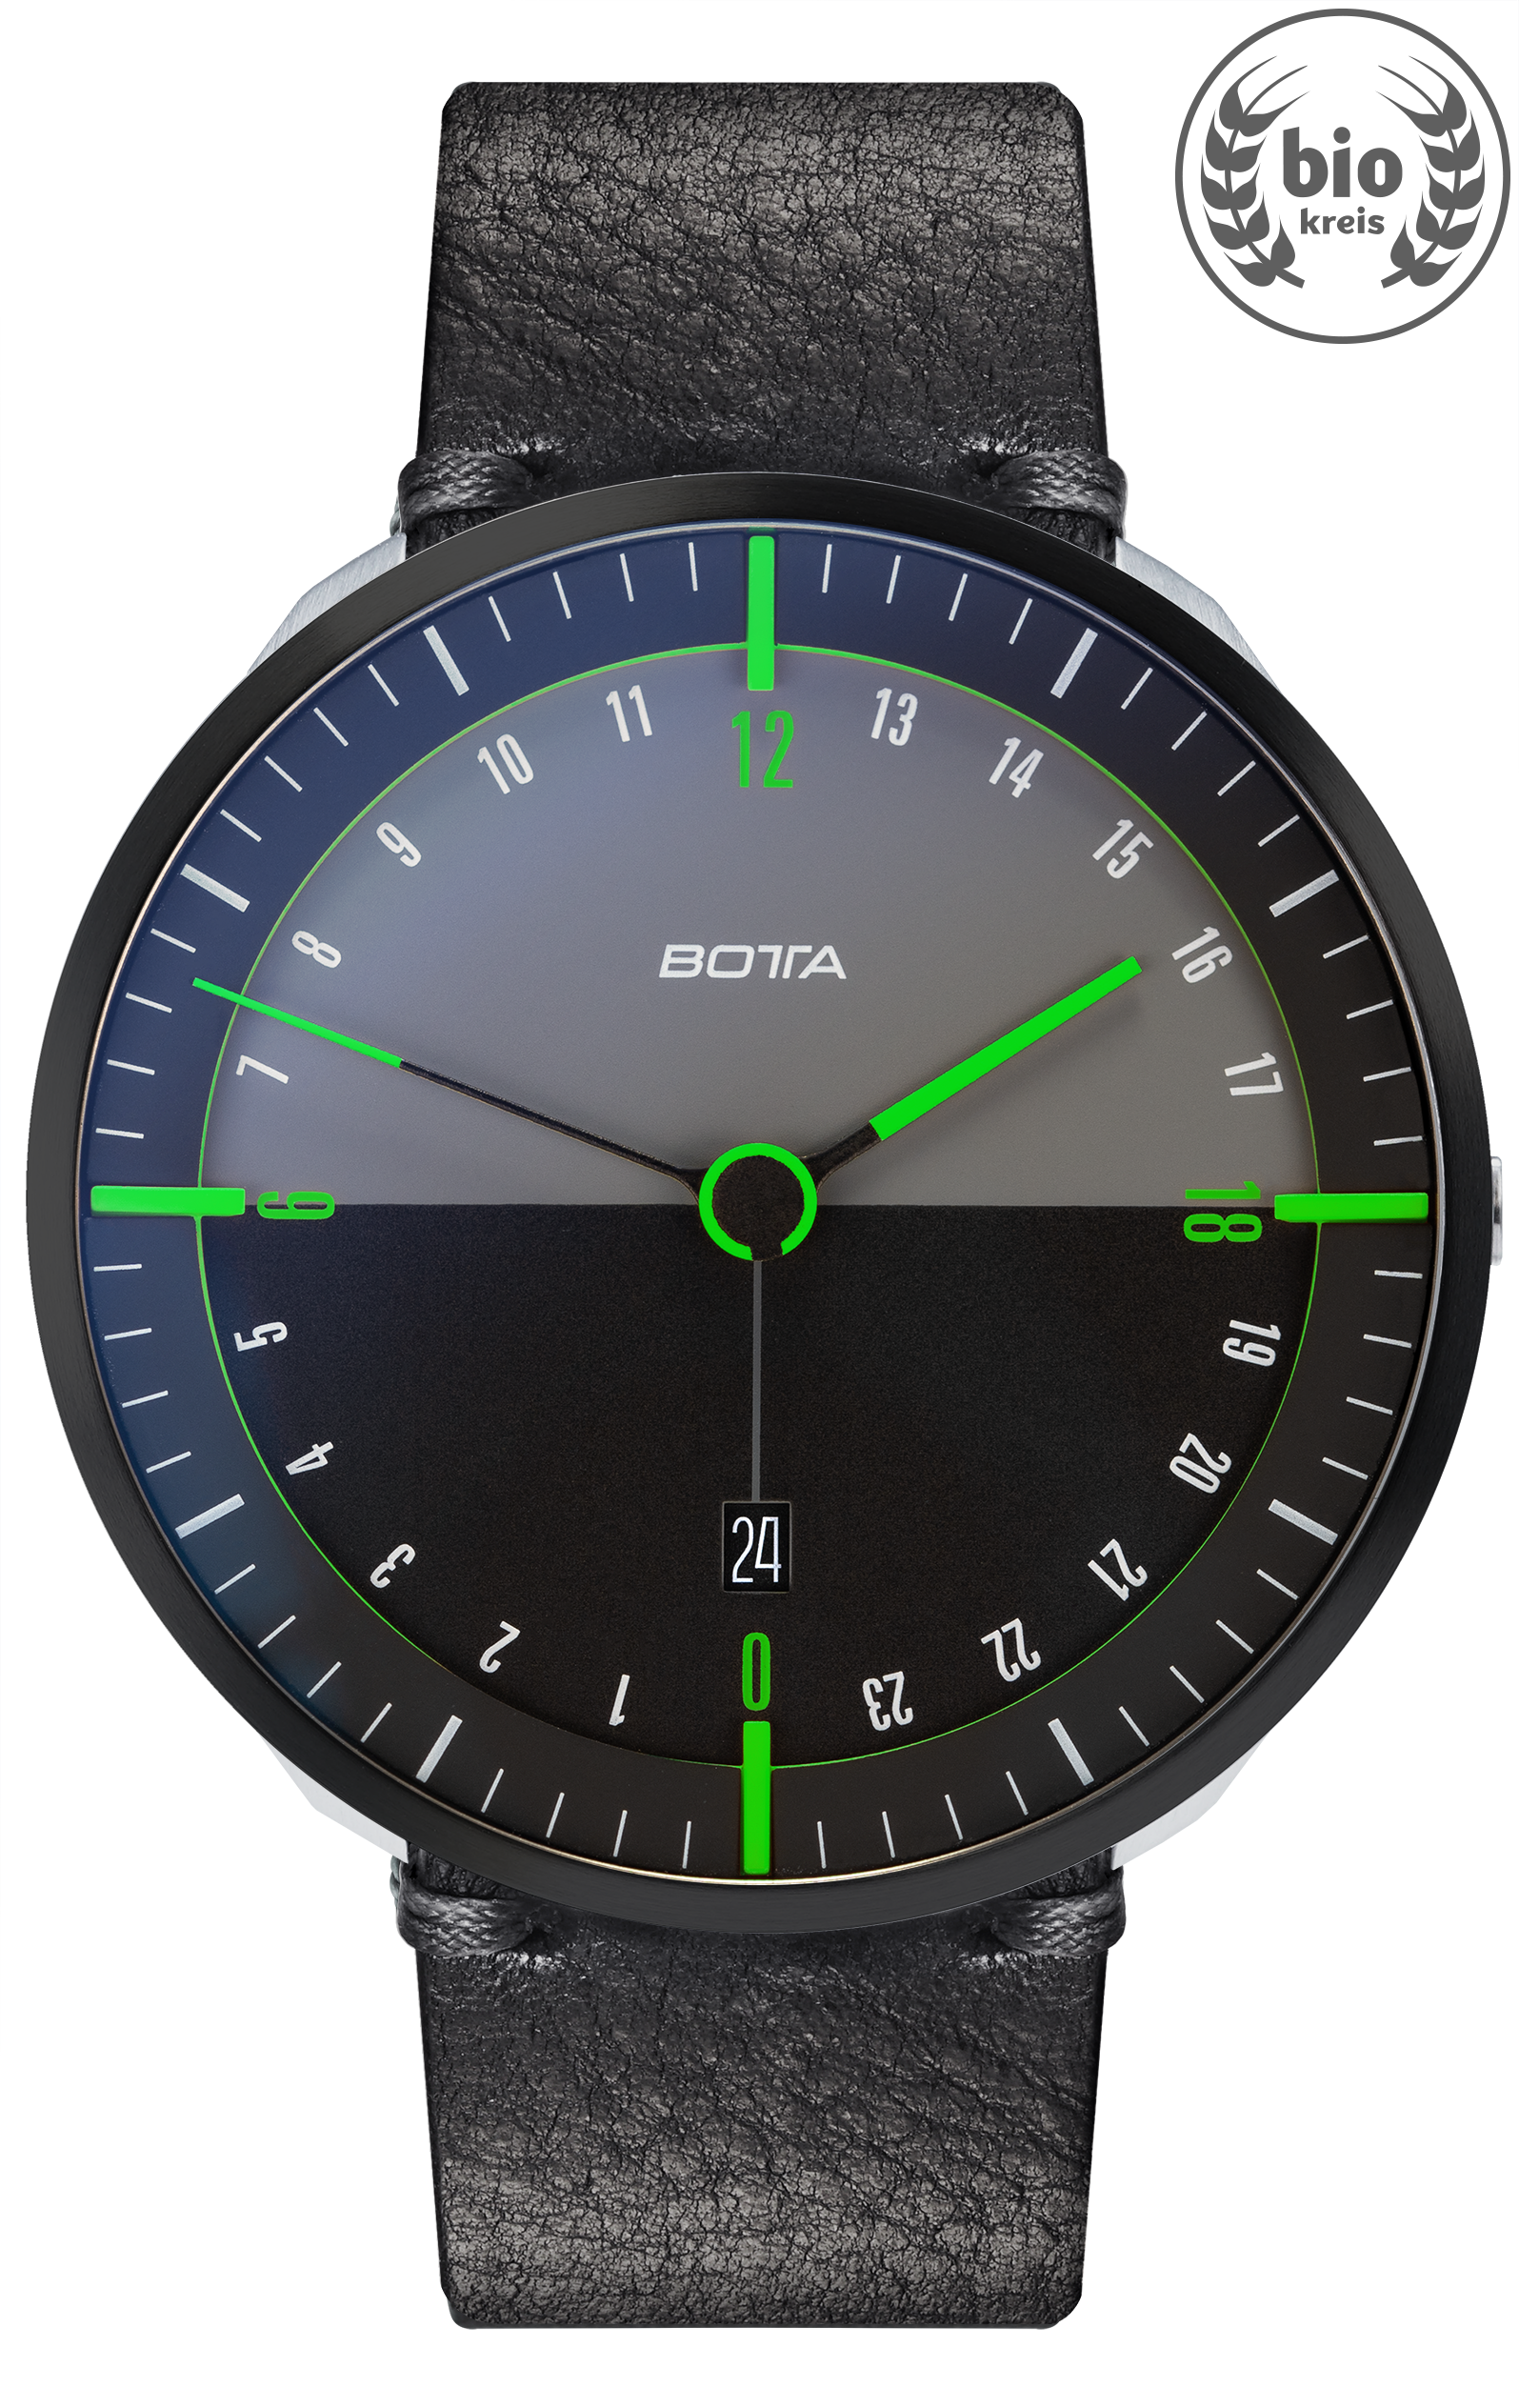 KLAUS BOTTA DESIGN 腕時計 ドイツ製 デザイン腕時計 1針 - 時計